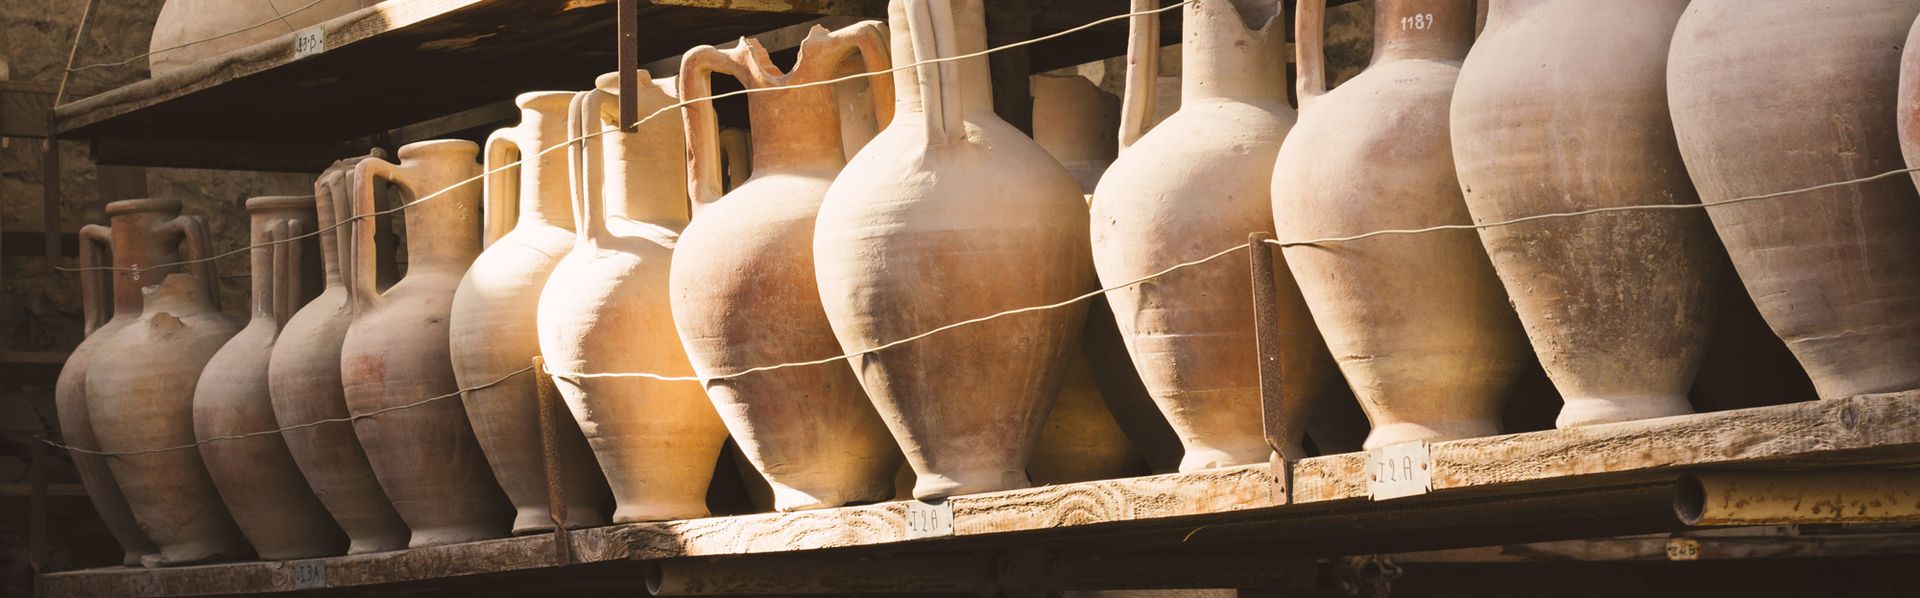 Des découvertes anciennes et des artefacts dans la ville antique de Pompéi en Italie. [Michal - Fotolia]